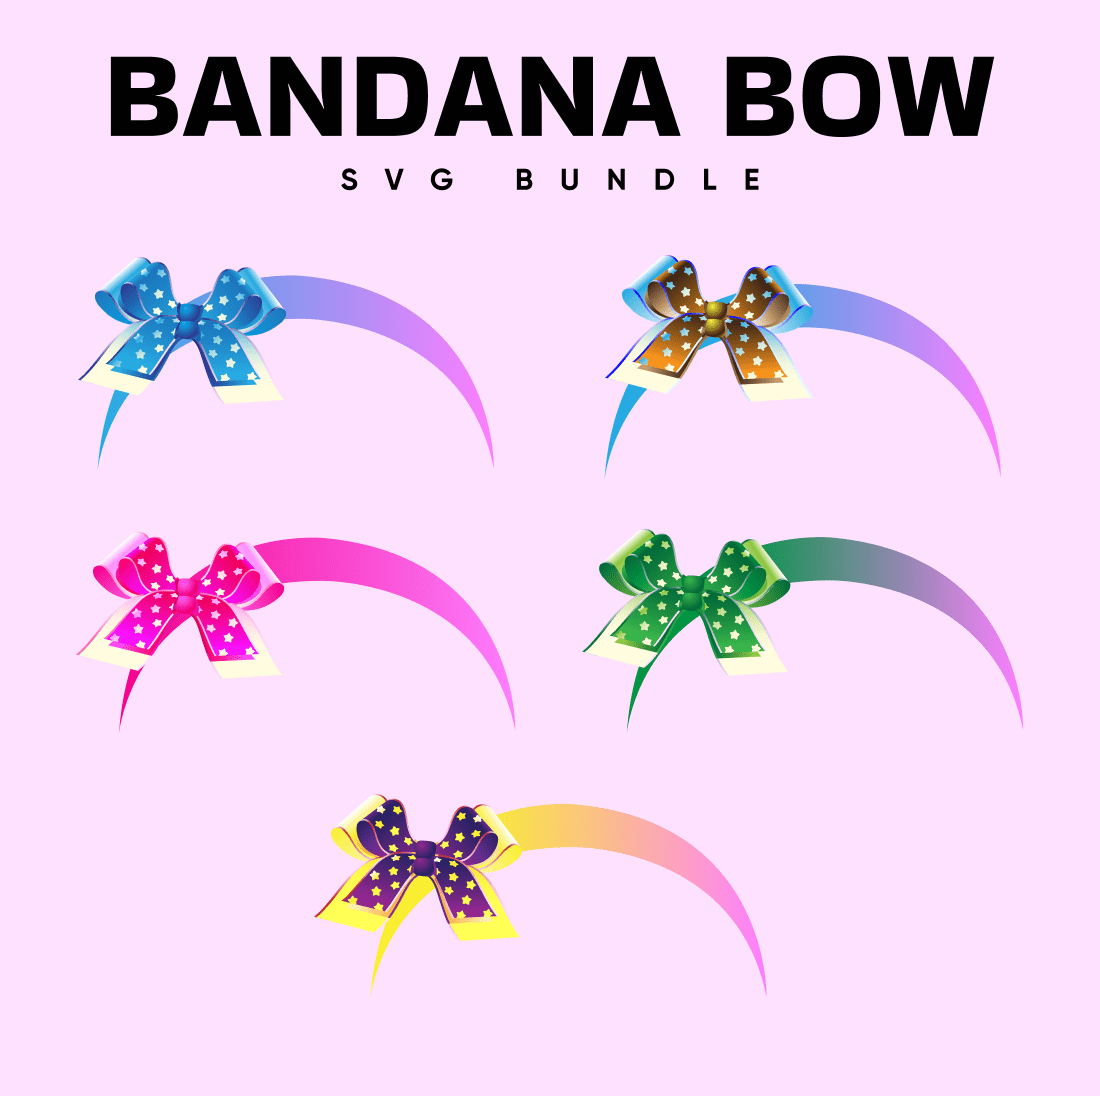 Bandana Bow SVG - main image preview.